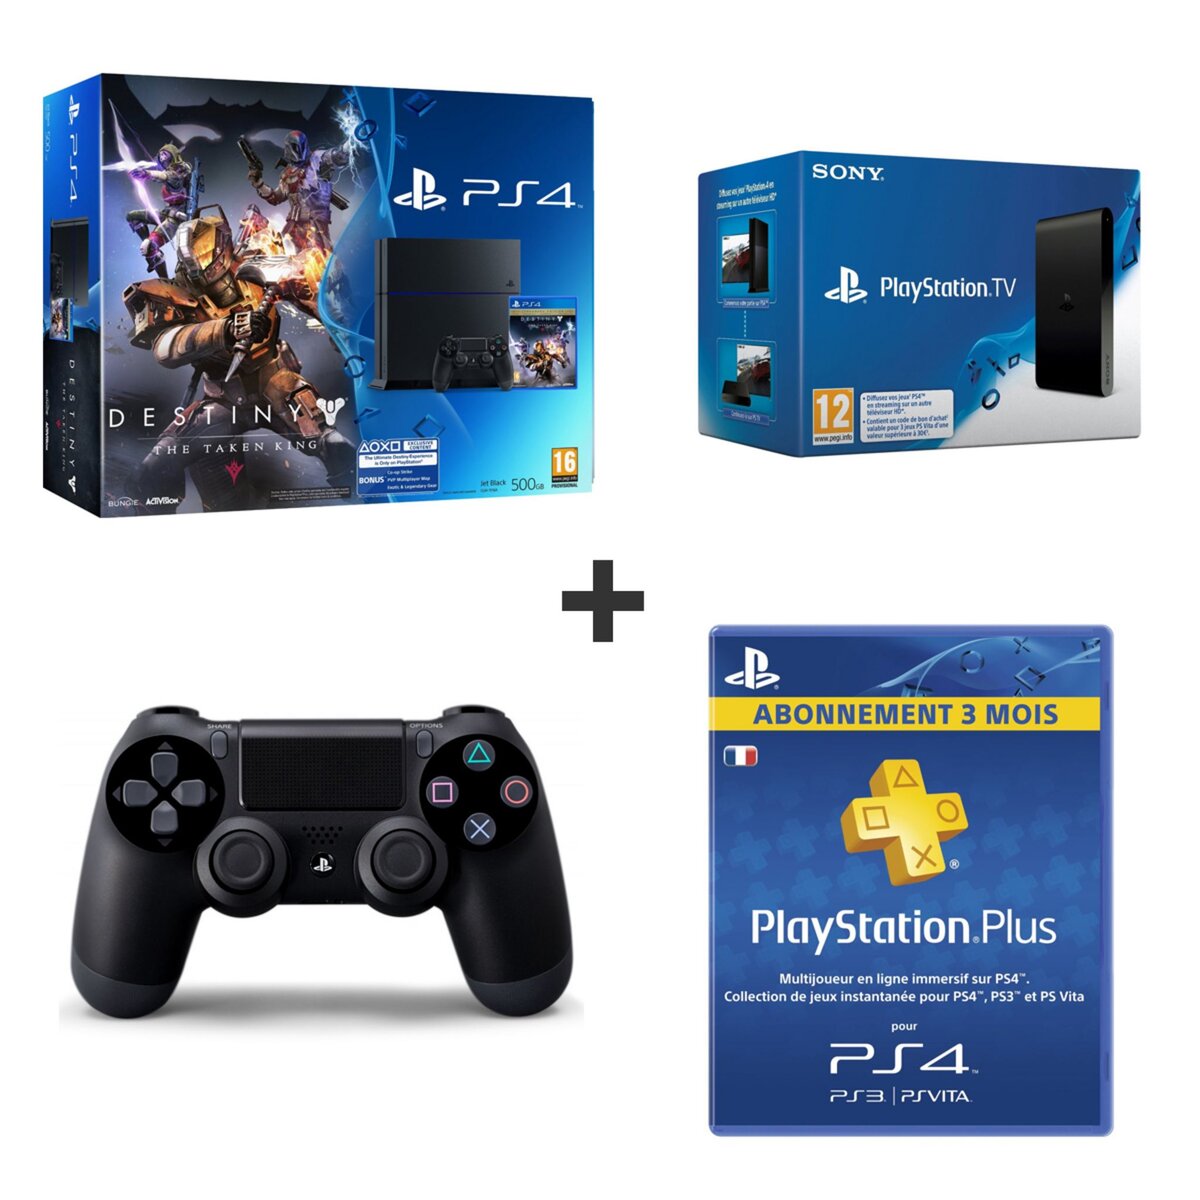 PS4 500 Go Destiny + Playstation TV + Abonnement PS+ 3 Mois + Dual Shock 4